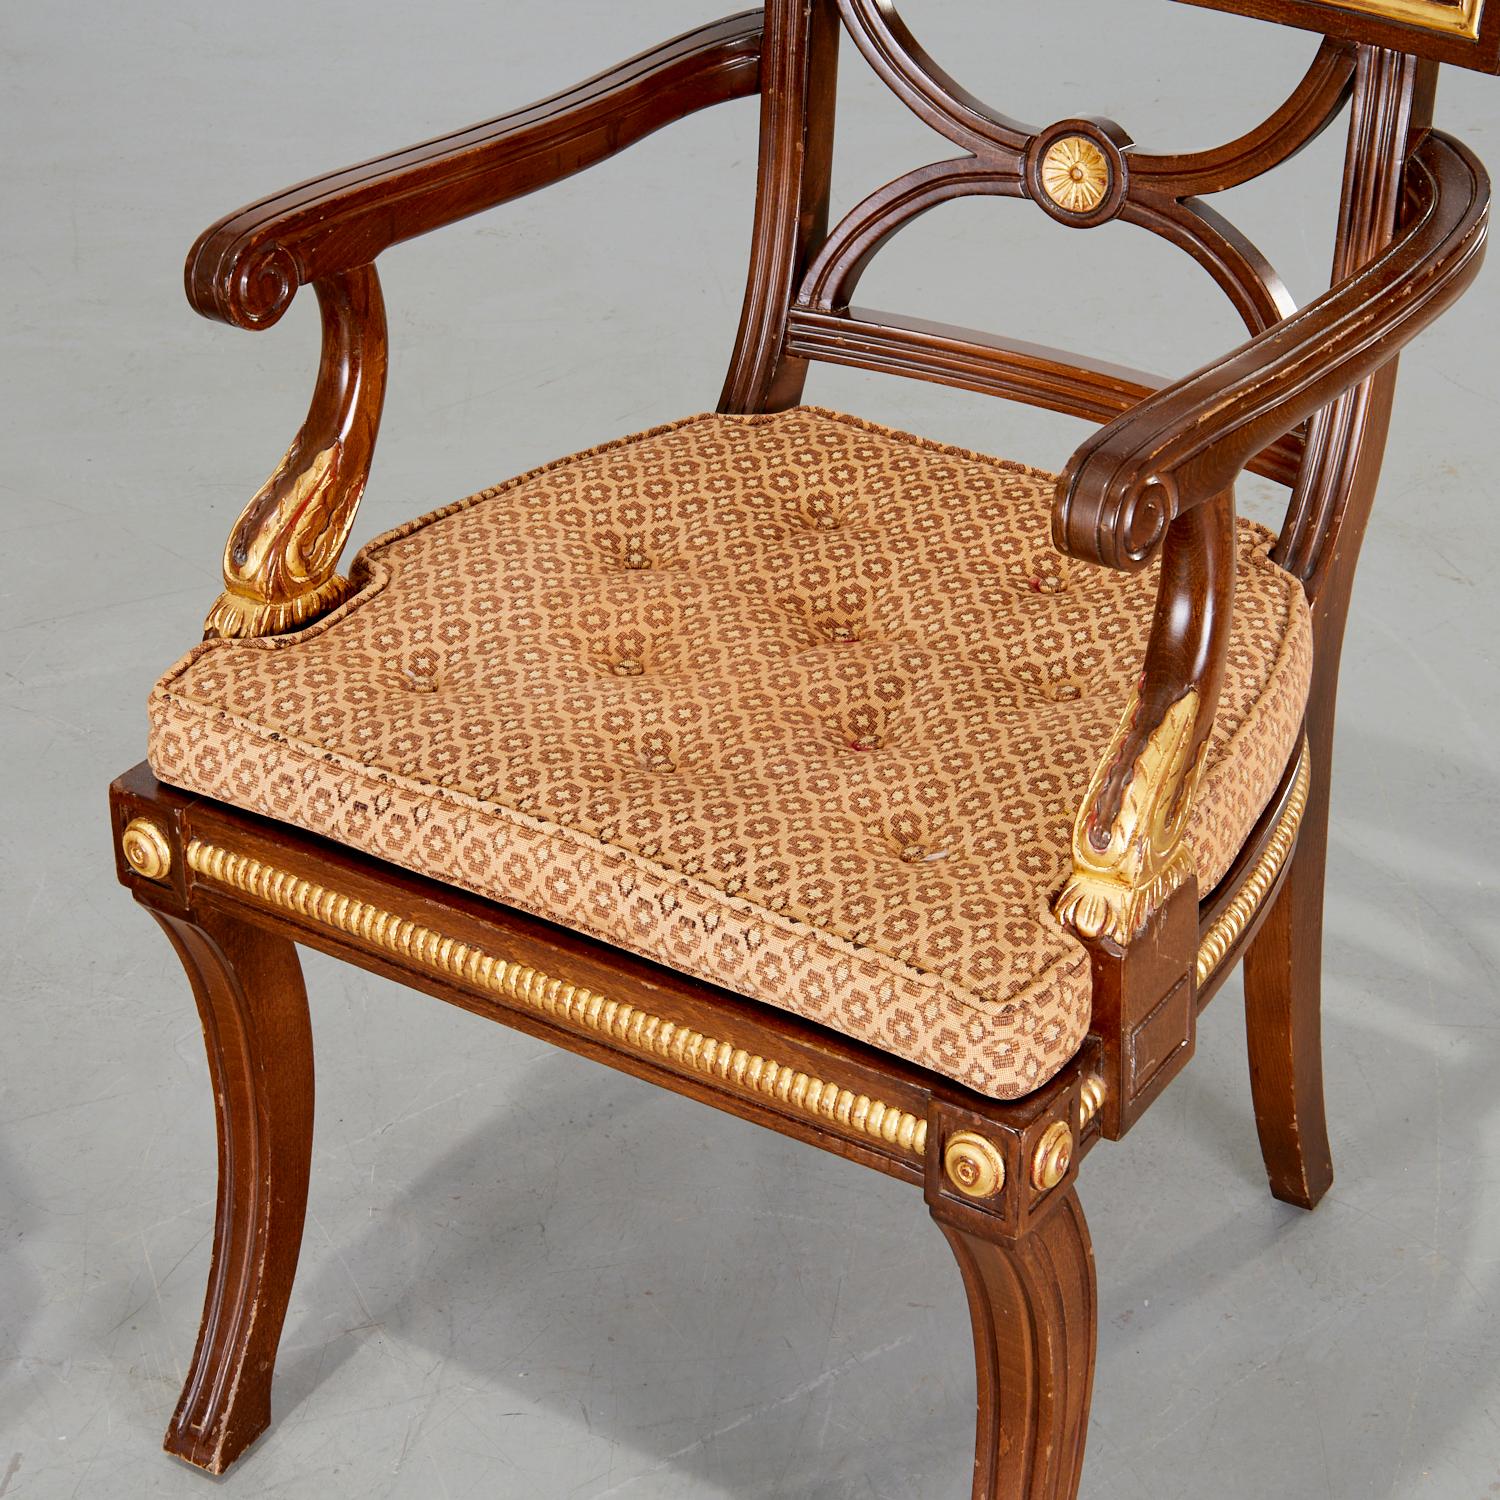 A.I.C., fauteuil de style Regency, avec design/One doré, médaillons et assise cannelée. Les bras se terminent par une folate dorée et des détails sculptés. L'assise est dotée d'un joli coussin d'appoint touffeté de boutons. Les pieds en sabre